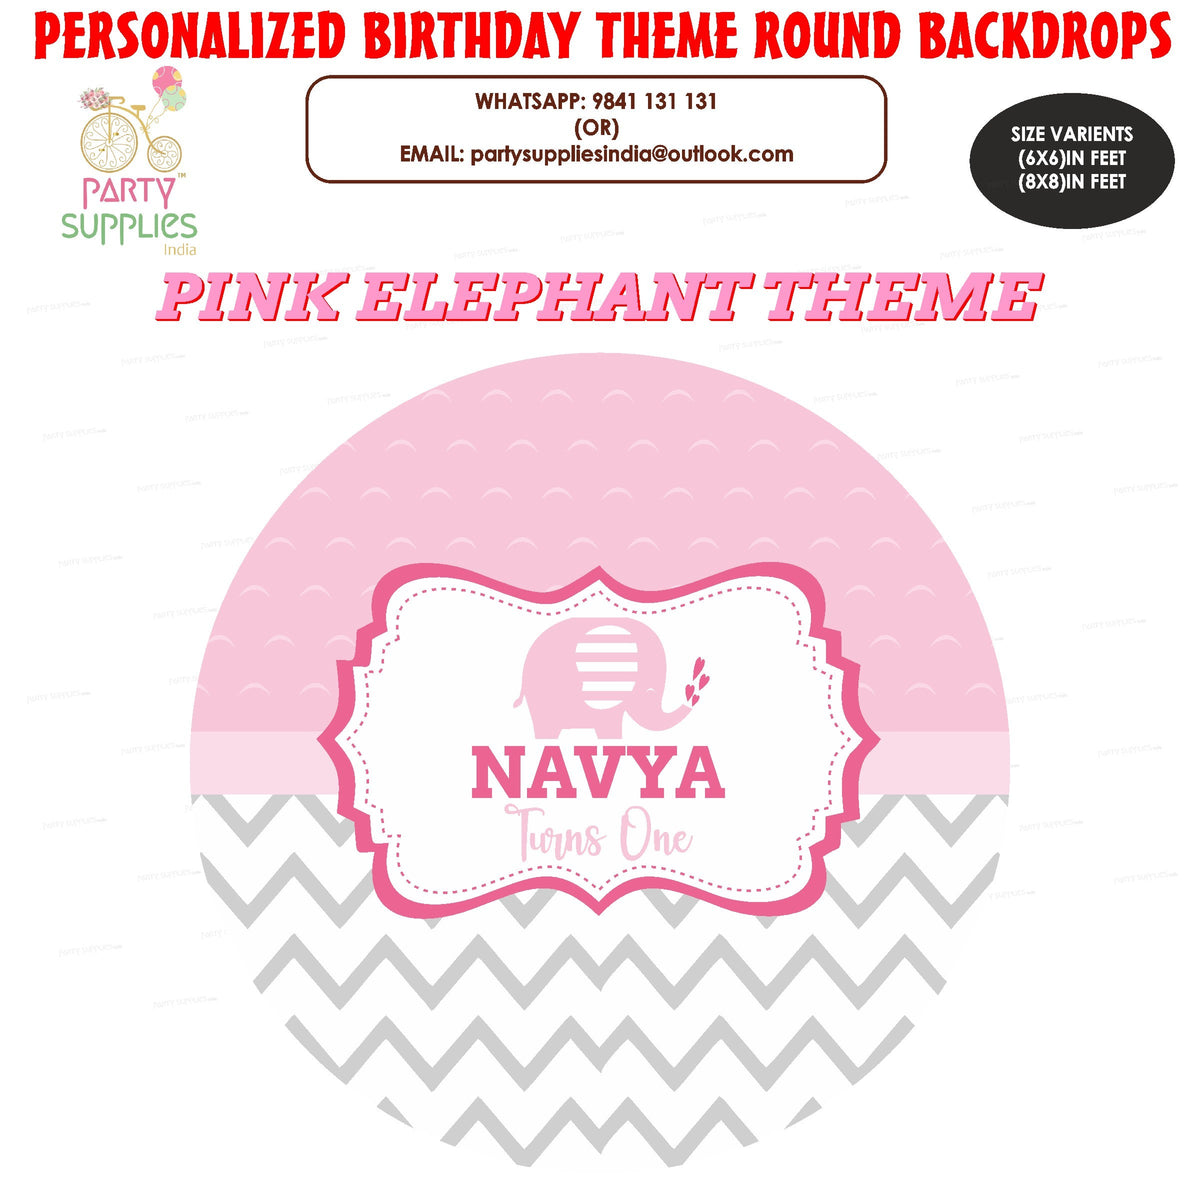 PSI Pink Elephant Theme Customized Round Backdrop